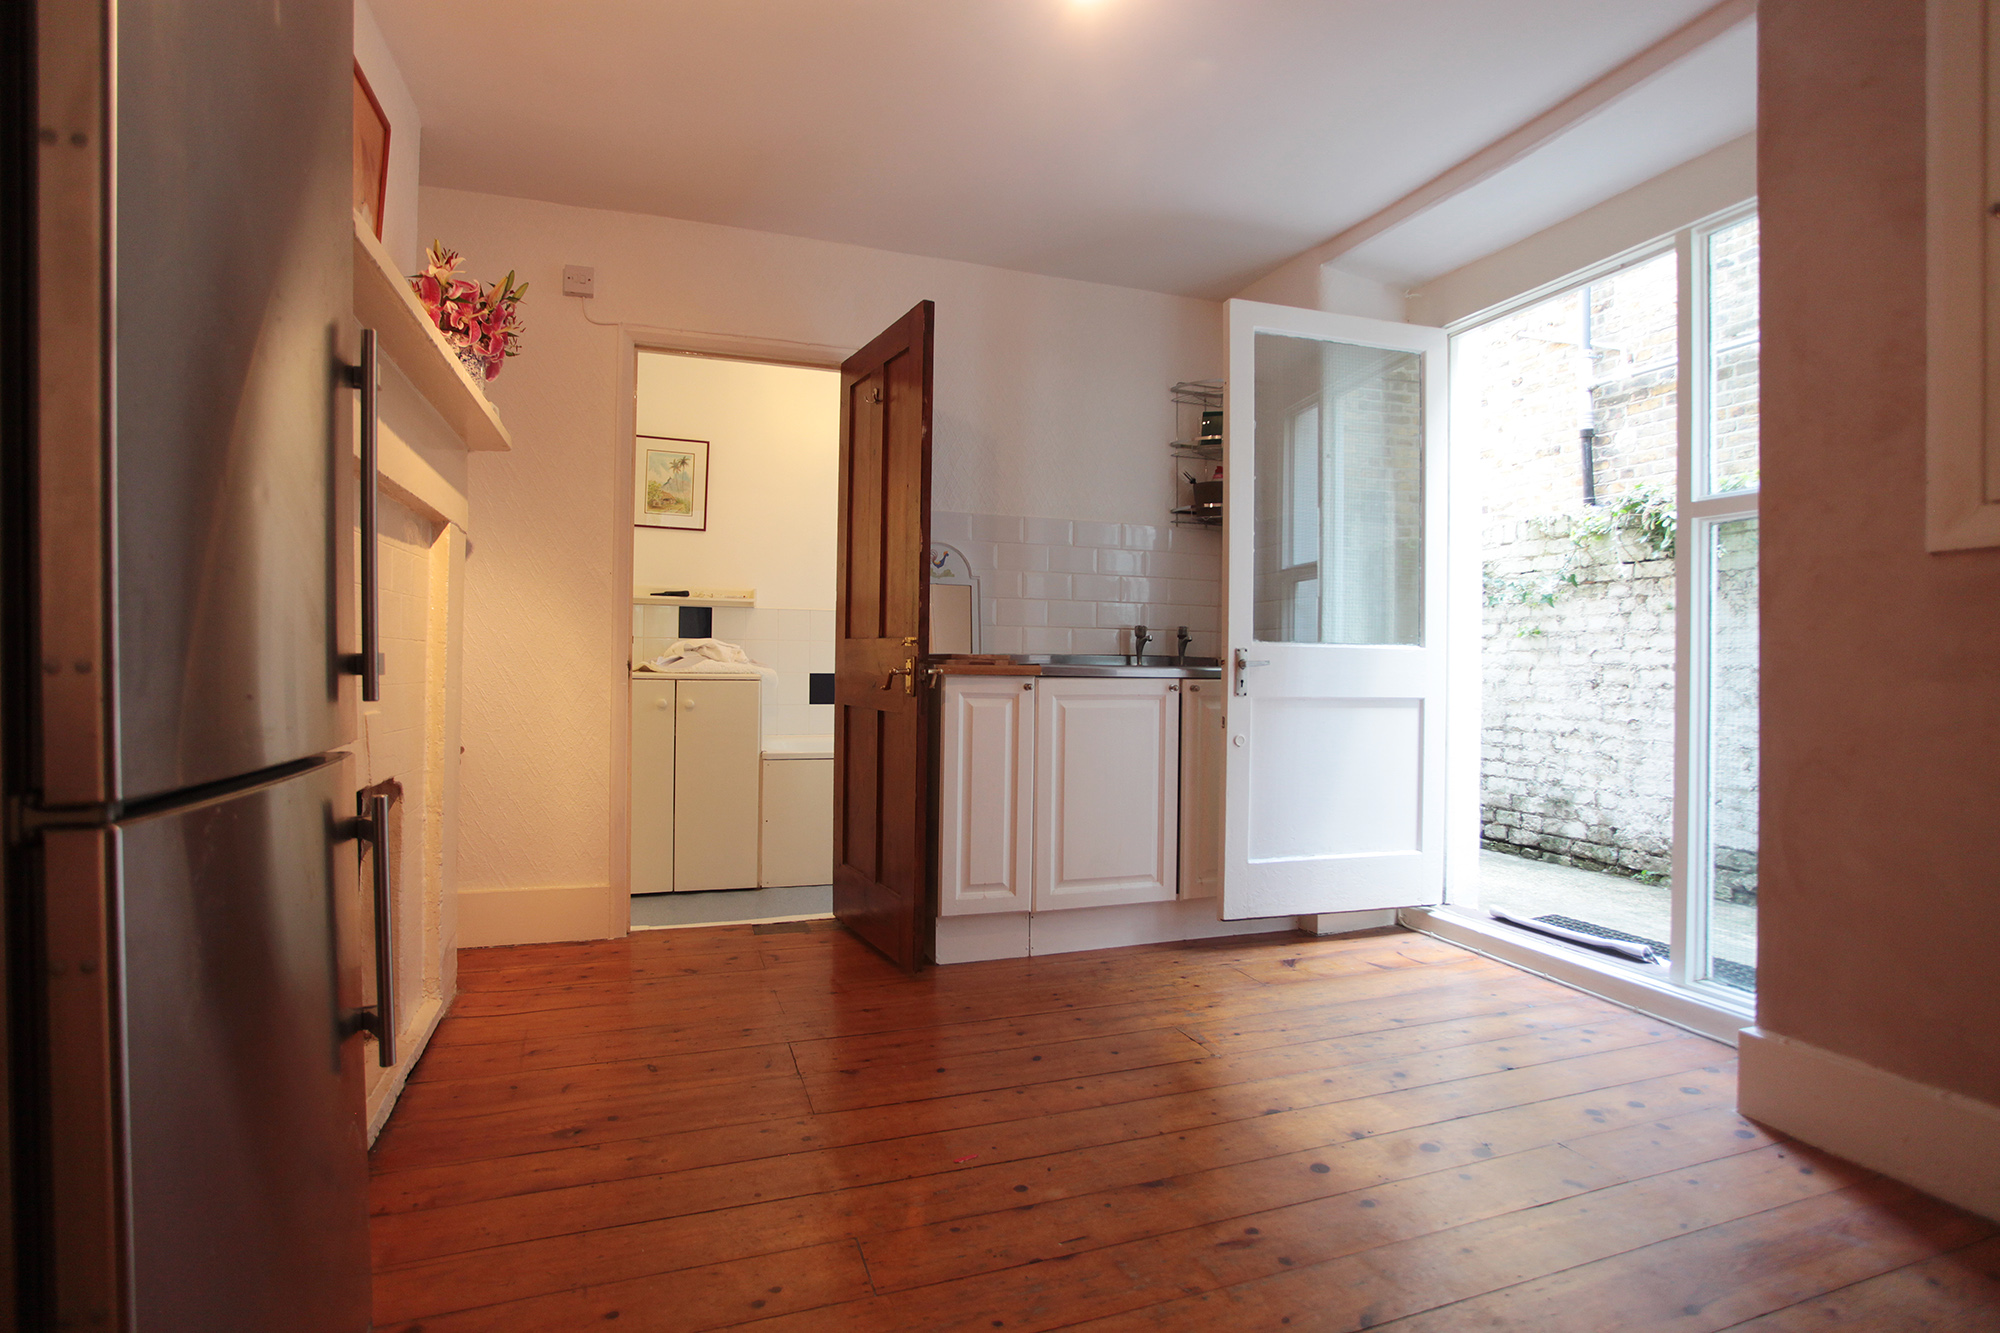 1 Bedroom Flat To Rent In Ferndale Road Sw4 London